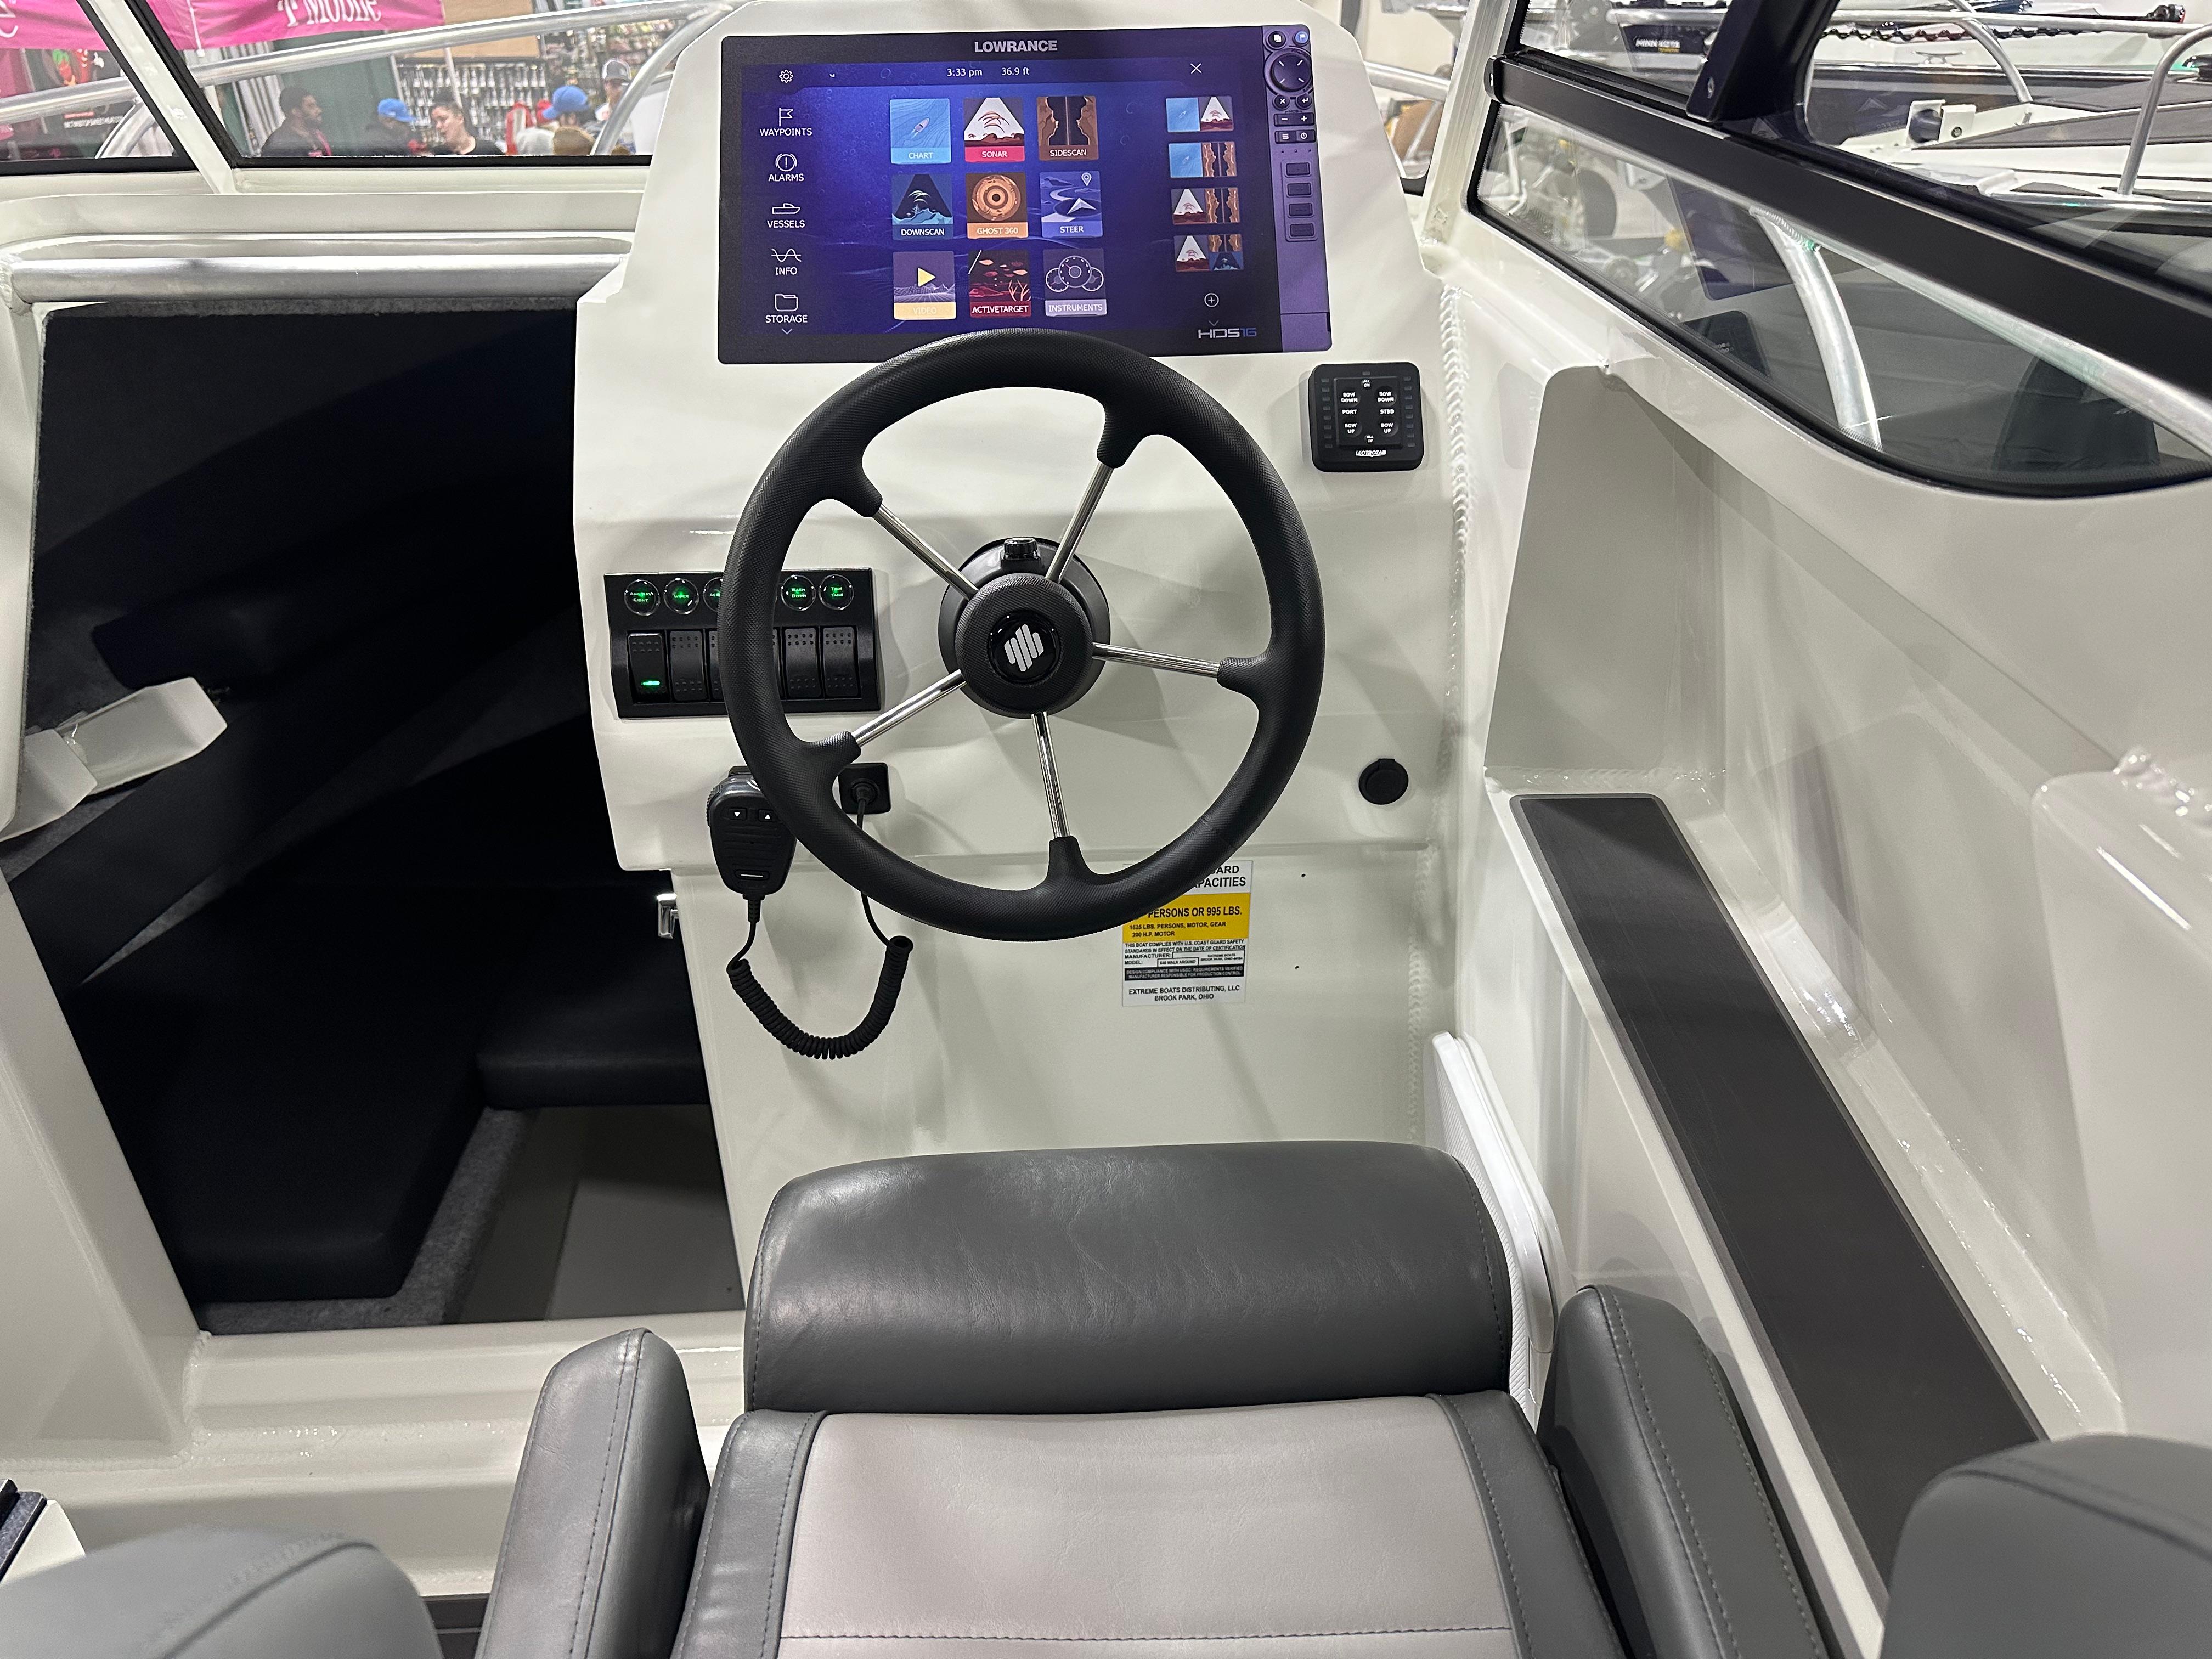 Steering Wheel, VHF Radio Mike, Lowrance Display 